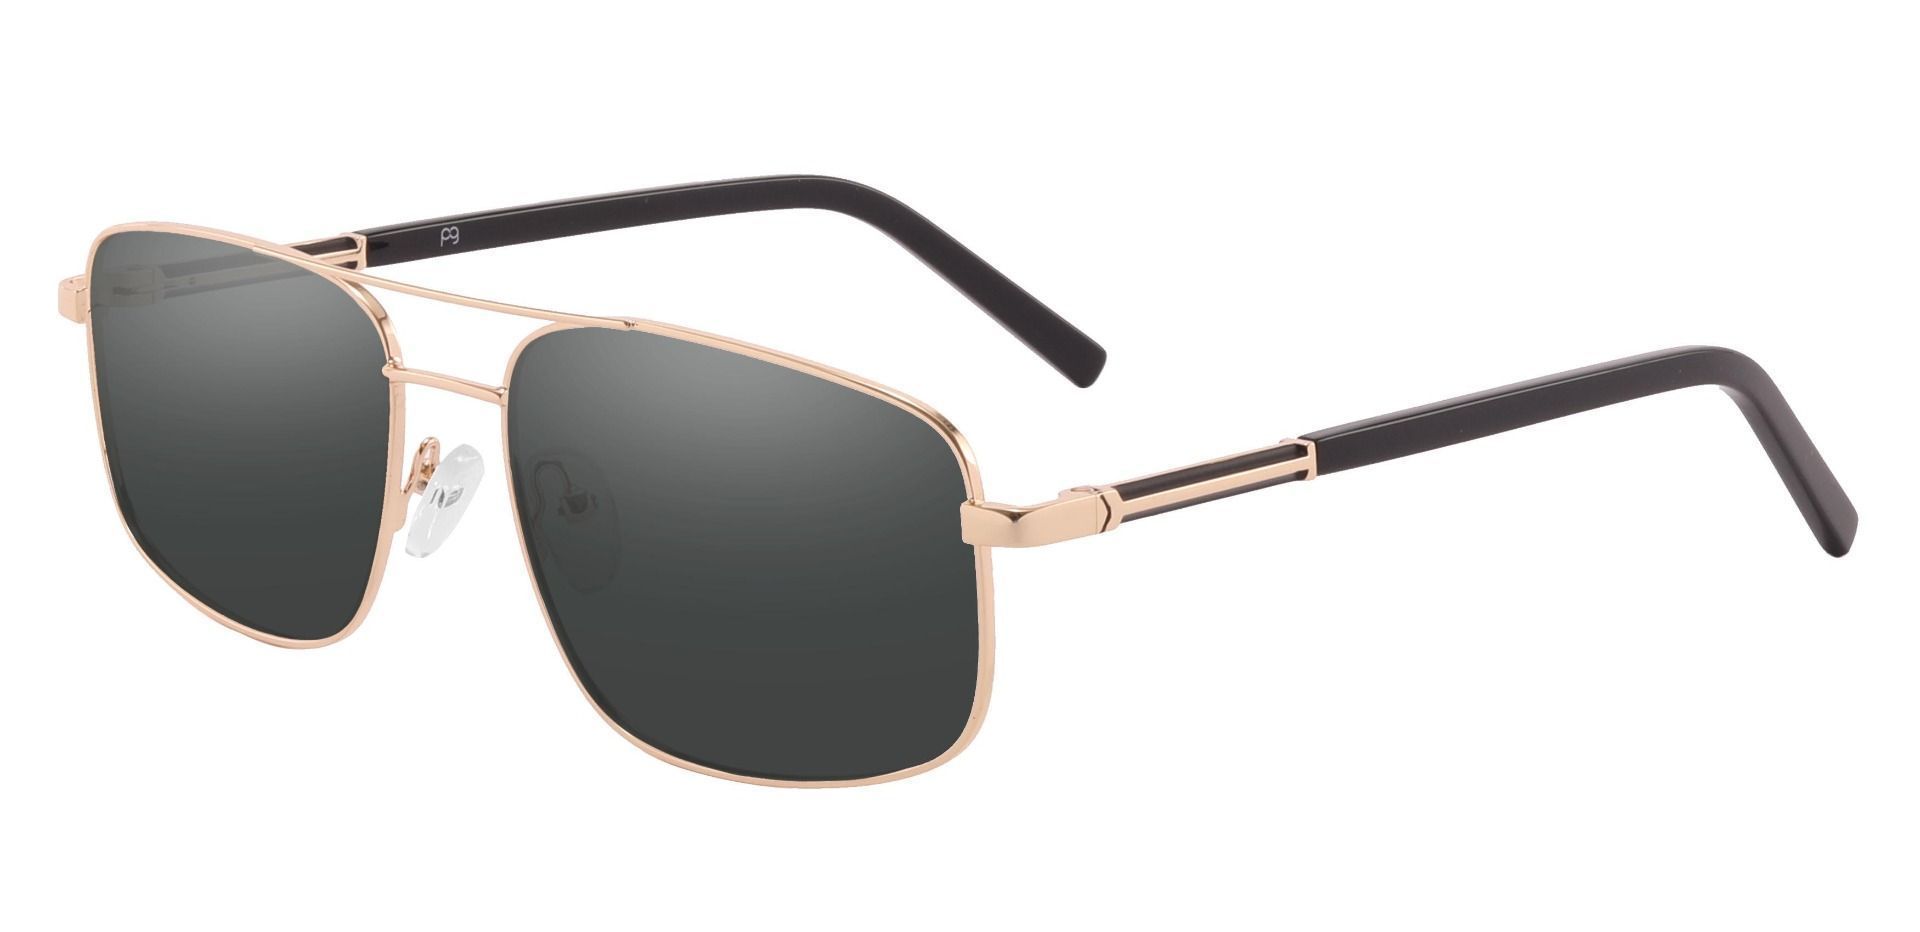 Davenport Aviator Progressive Sunglasses - Gold Frame With Gray Lenses